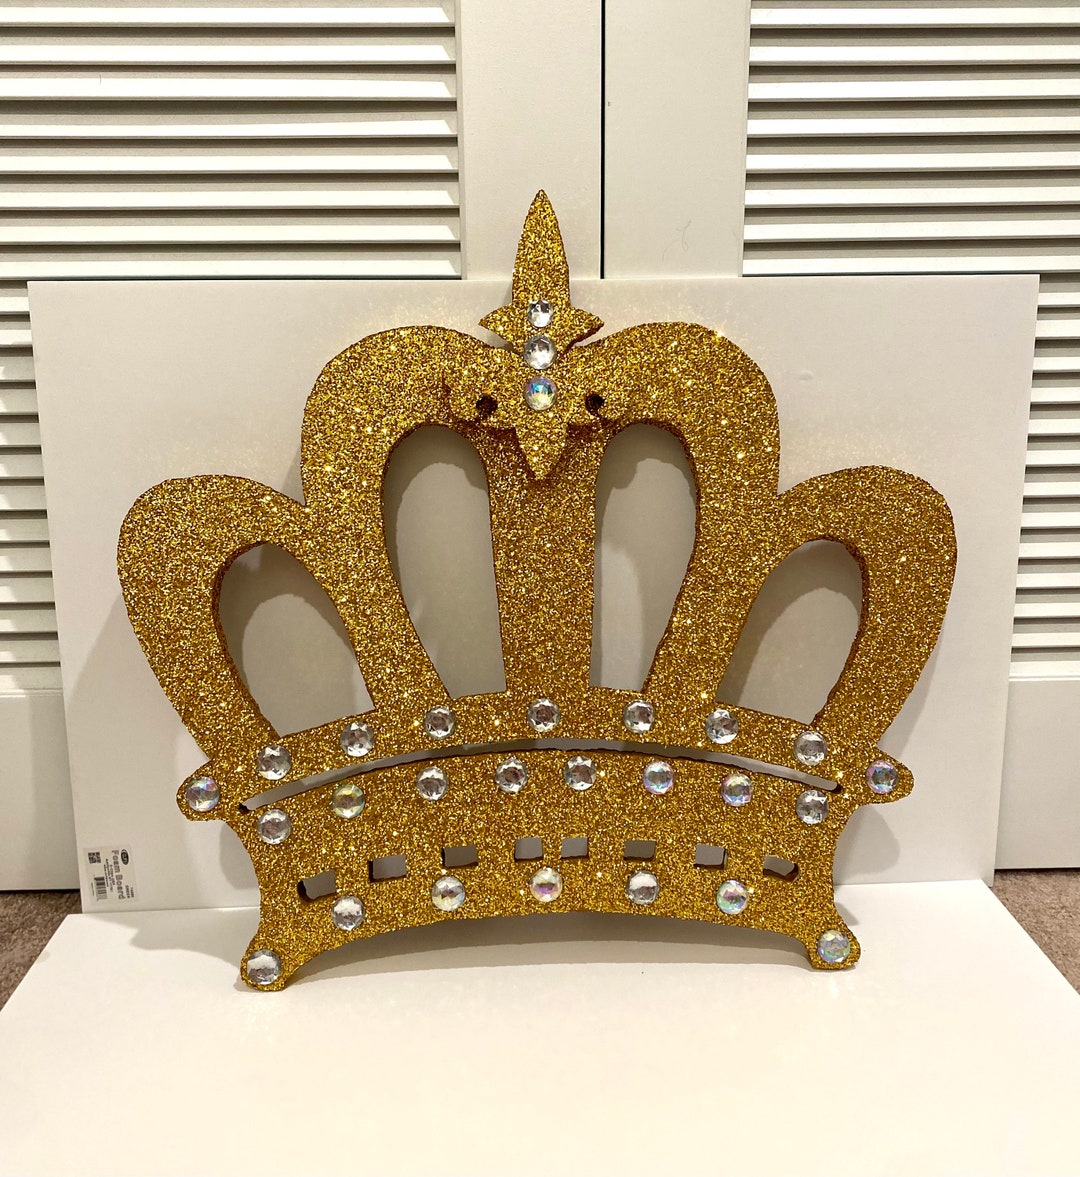 CROWN SCULPTING FOAM – Sew Lavish Crowns